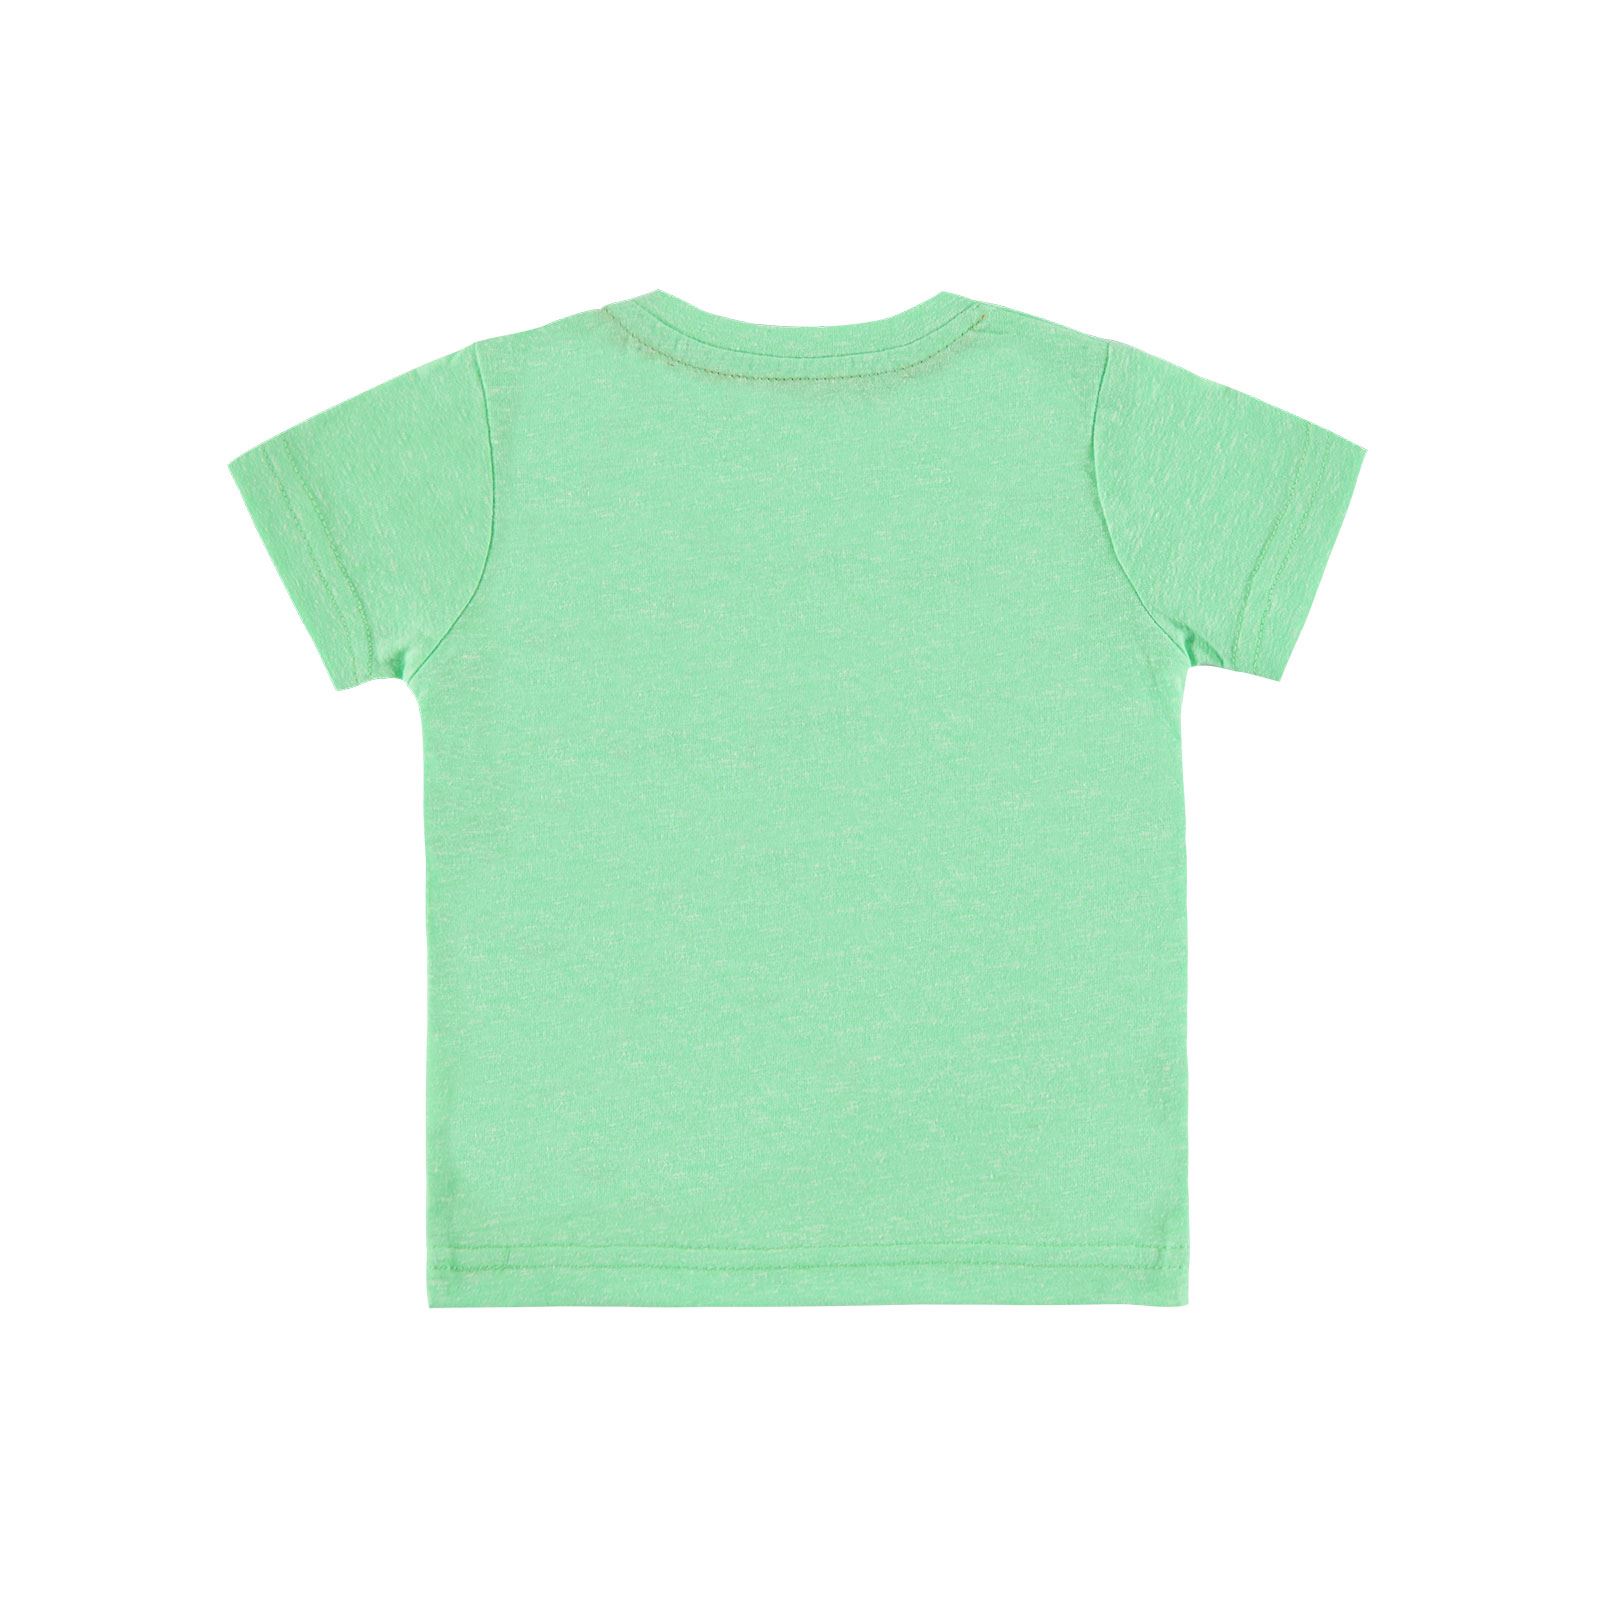 Kujju Erkek Bebek Tişört 6-18 Ay Koyu Yeşil